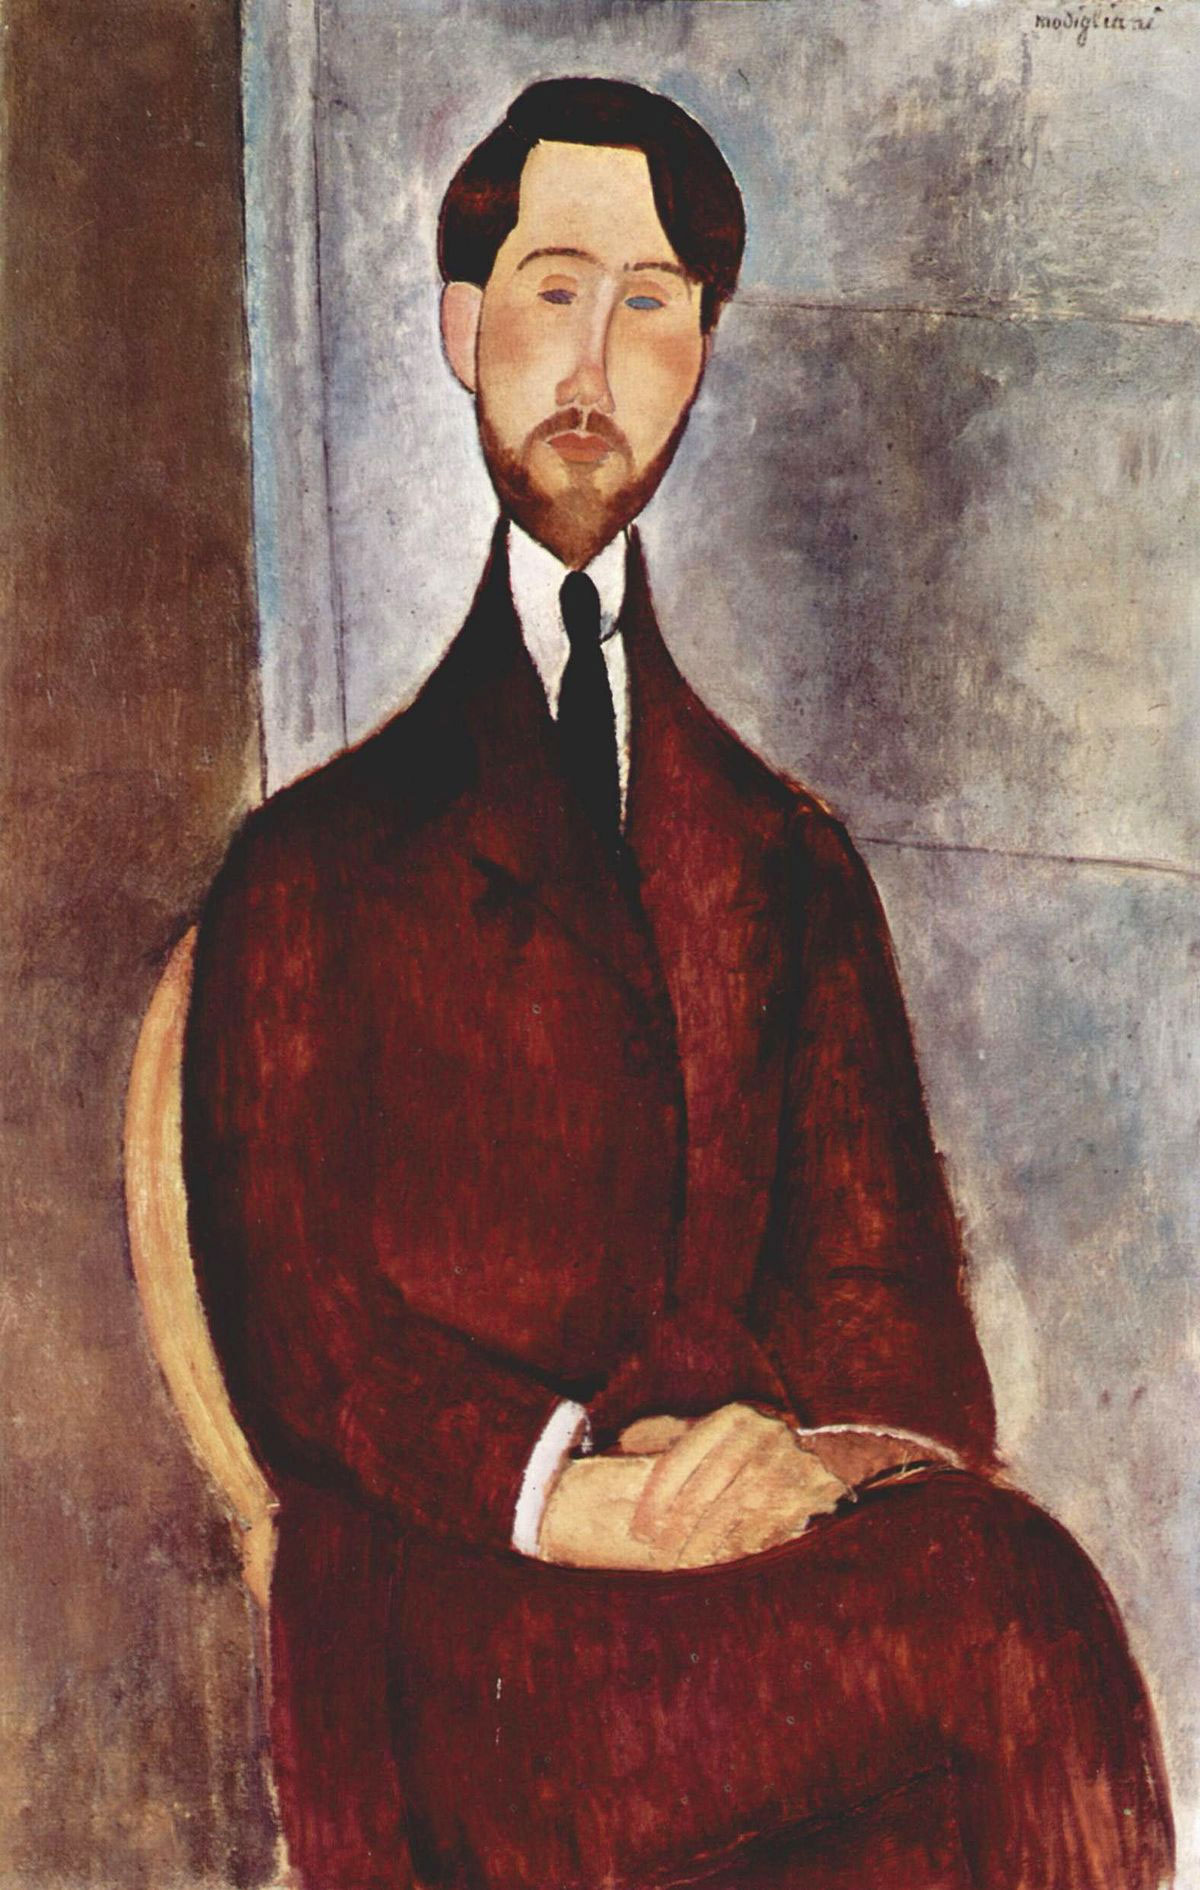 Léopold Zborowski ritratto da Modigliani (1919)